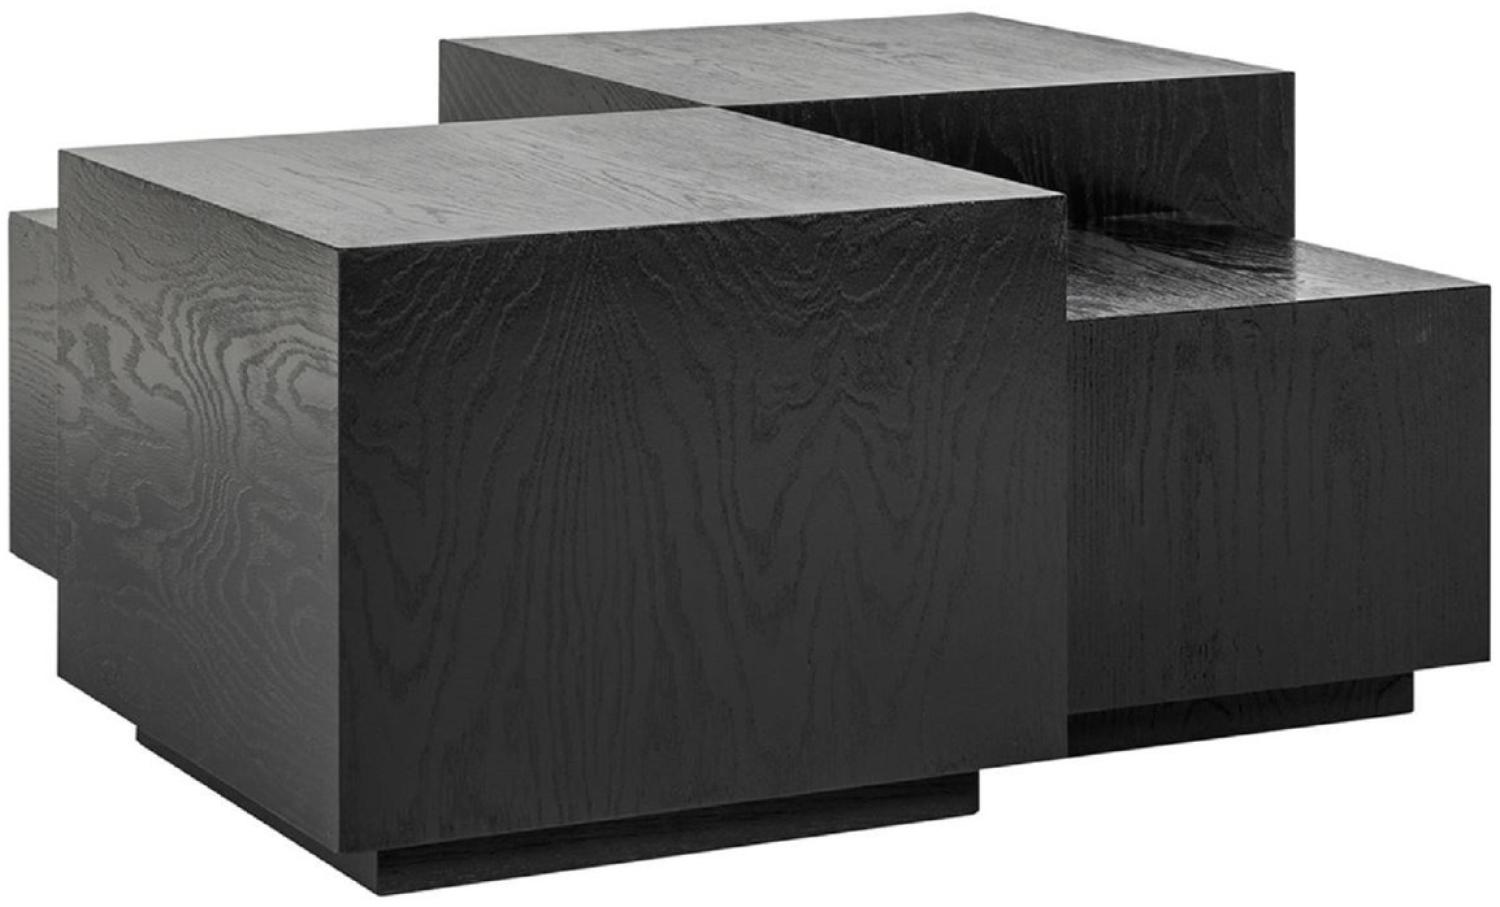 Casa Padrino Luxus Couchtisch 4er Set Schwarz 75 x 75 x H. 40 cm - Quadratischer Massivholz Wohnzimmertisch - Wohnzimmer Möbel - Luxus Möbel - Luxus Einrichtung Bild 1